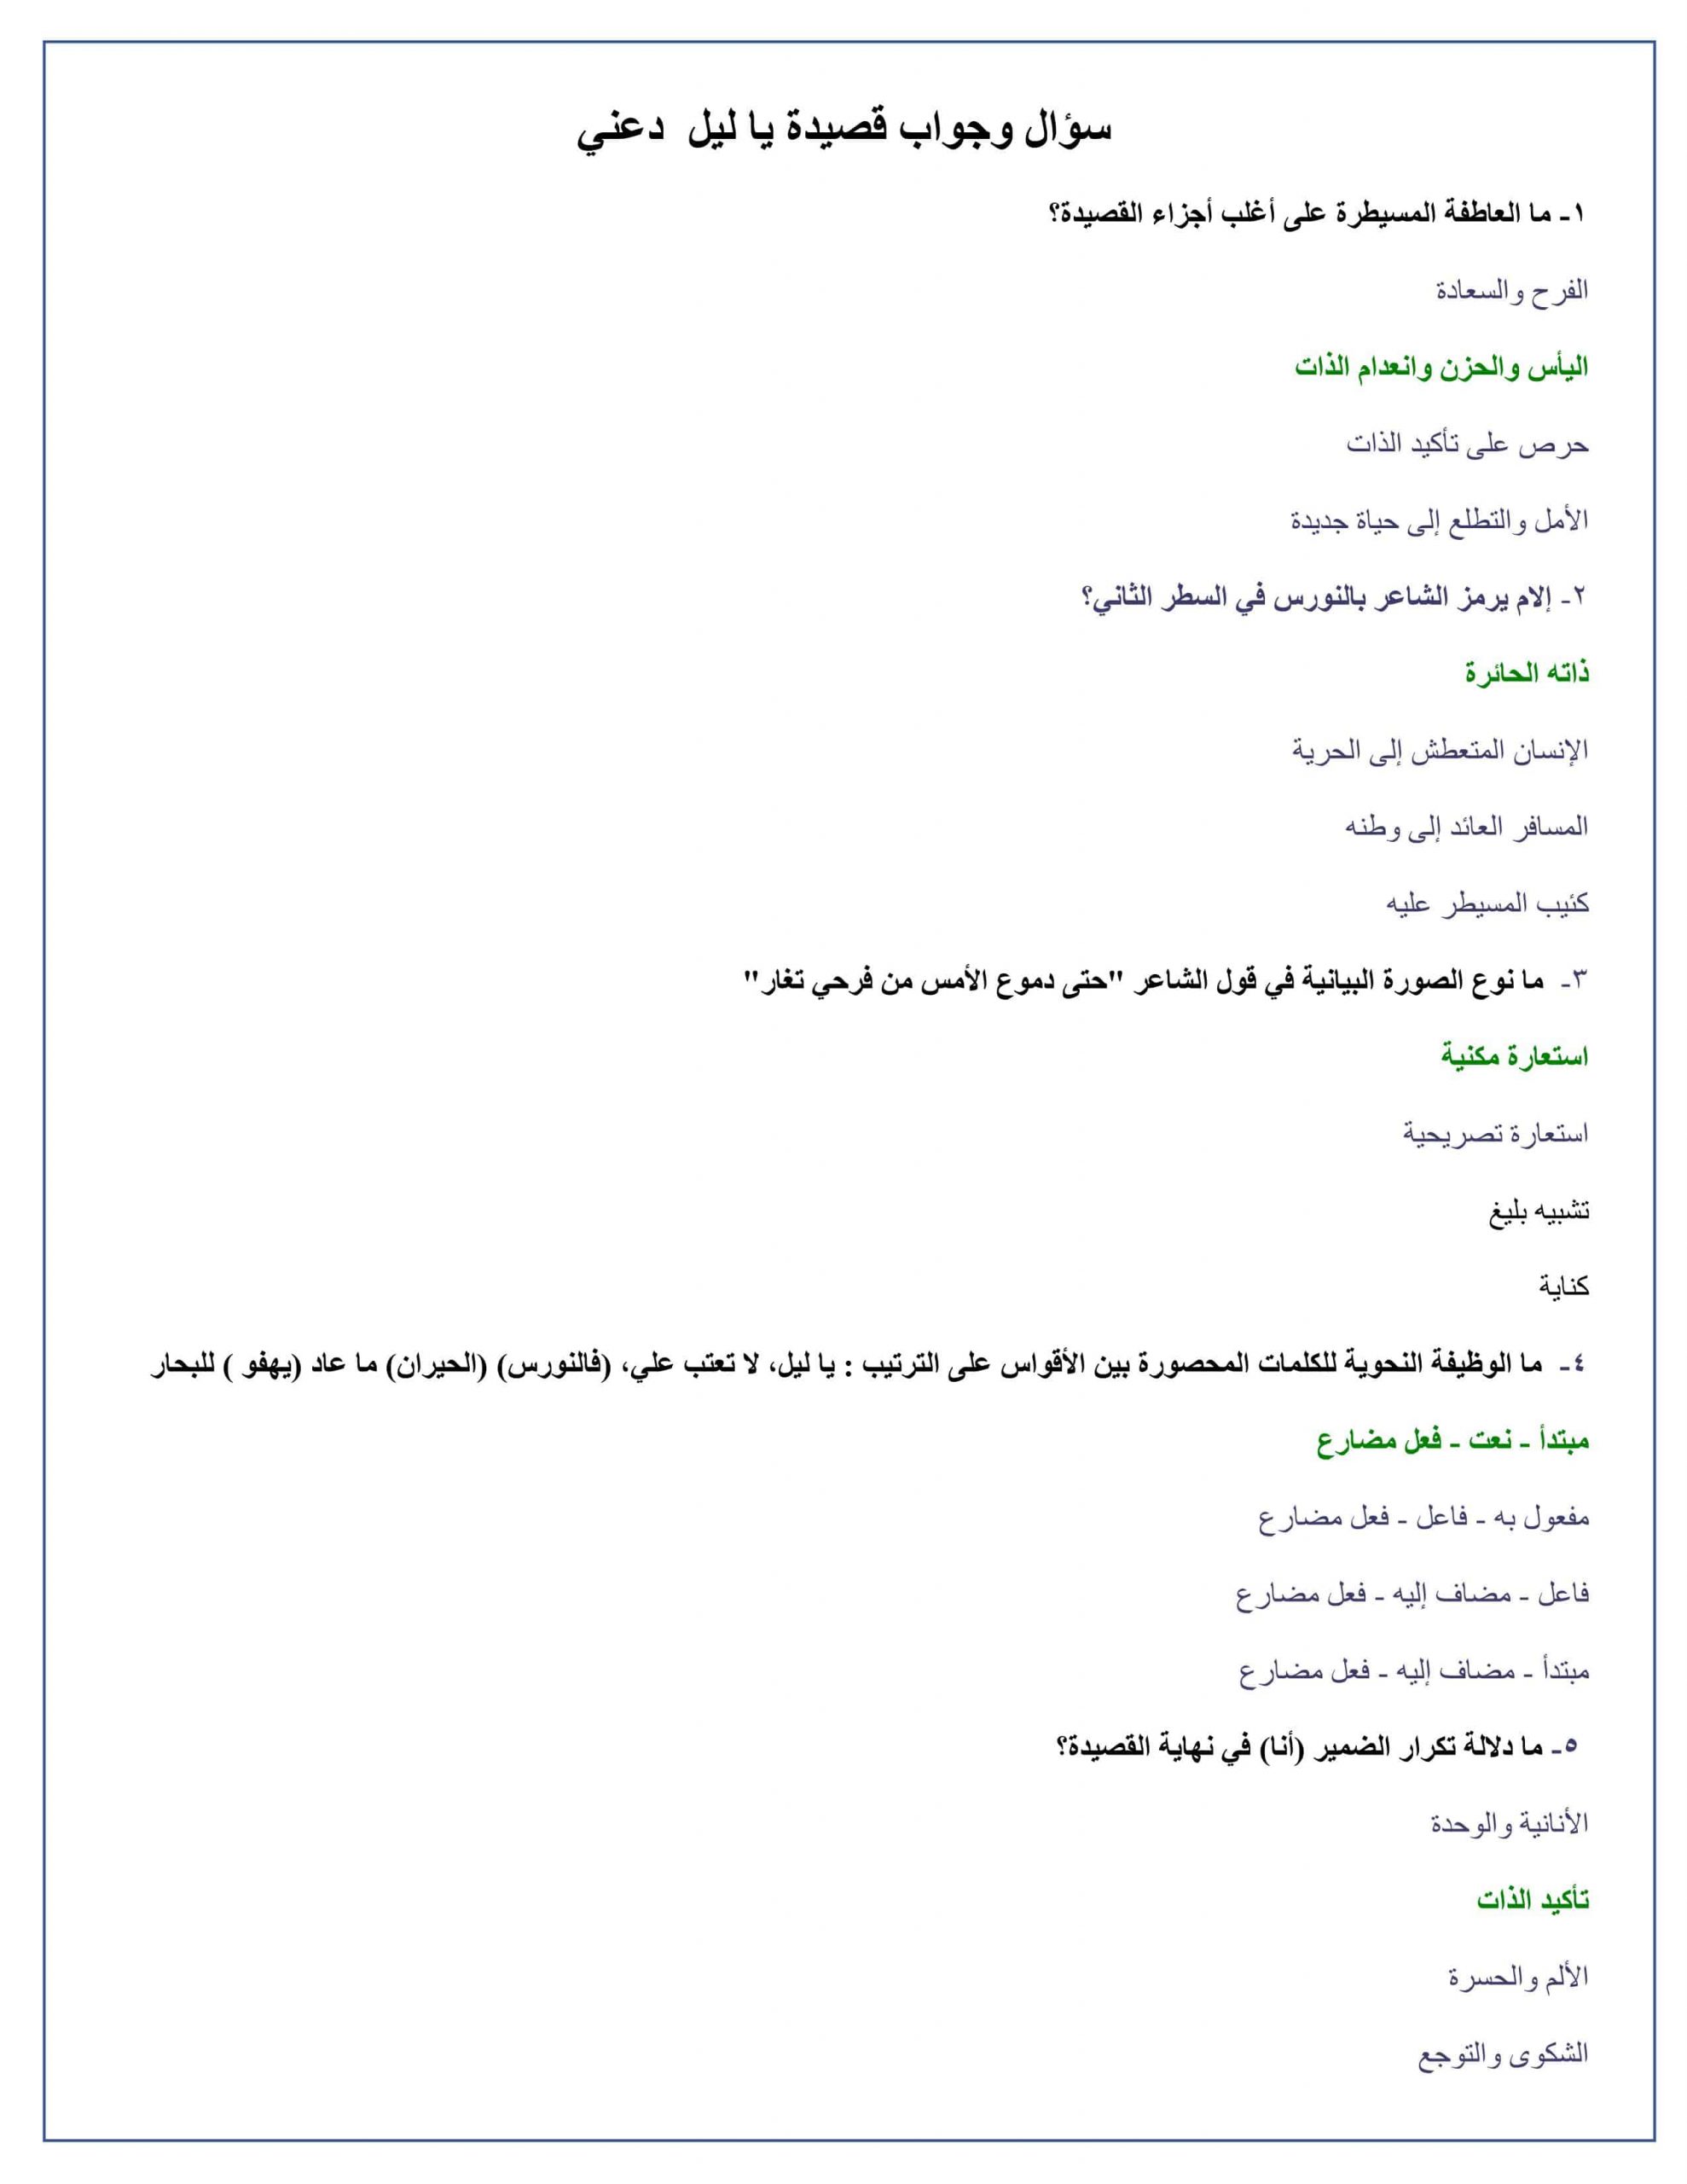 حل أسئلة قصيدة يا ليل دعني الصف الثاني عشر مادة اللغة العربية 